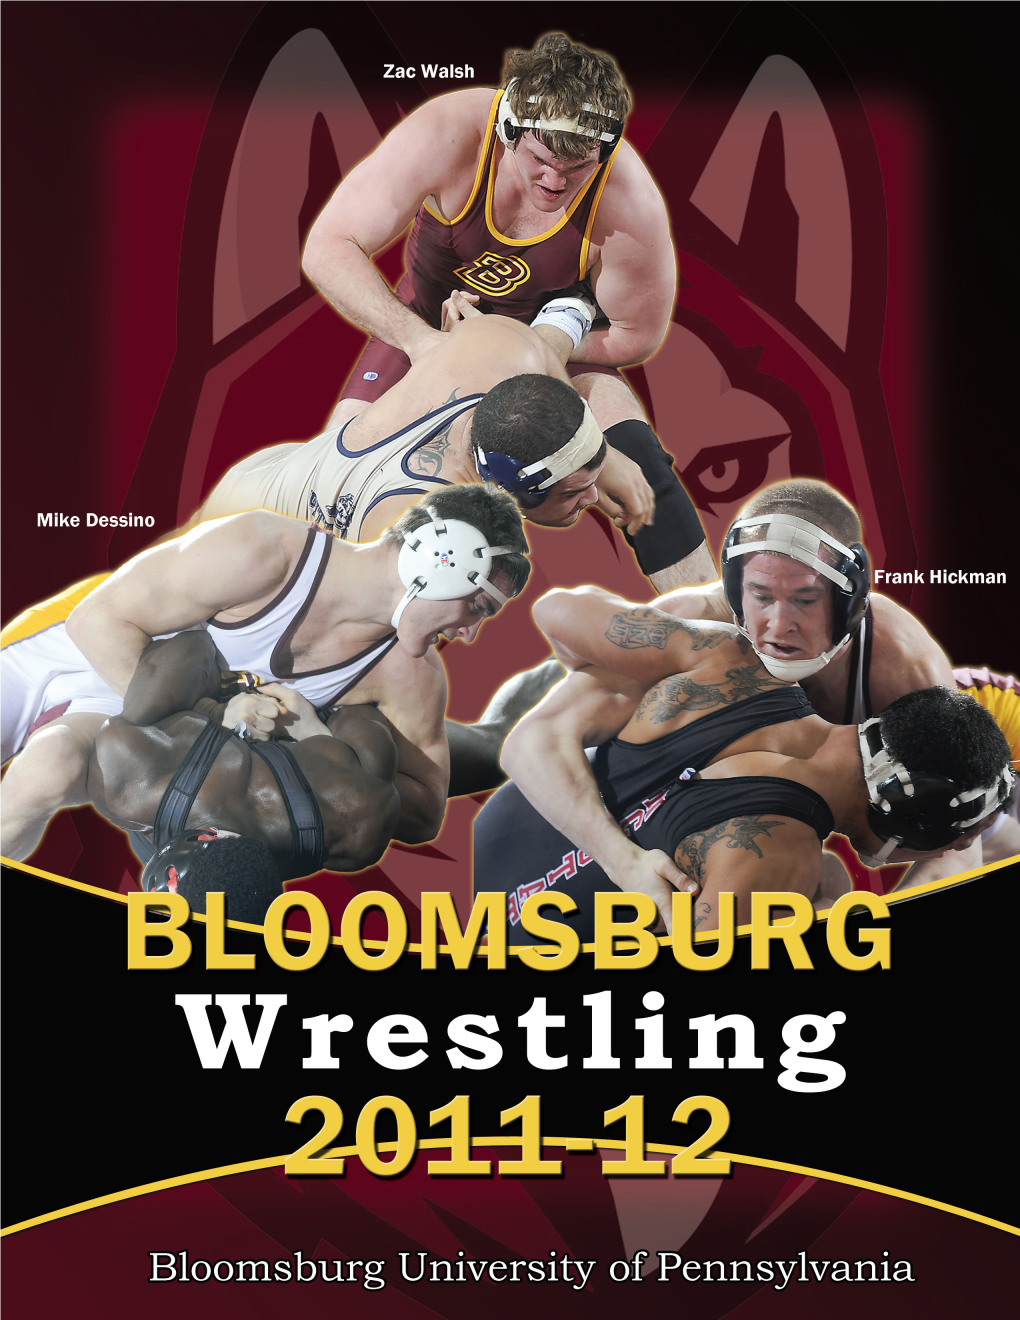 2011-12 Huskies Wrestling About Bloomsburg